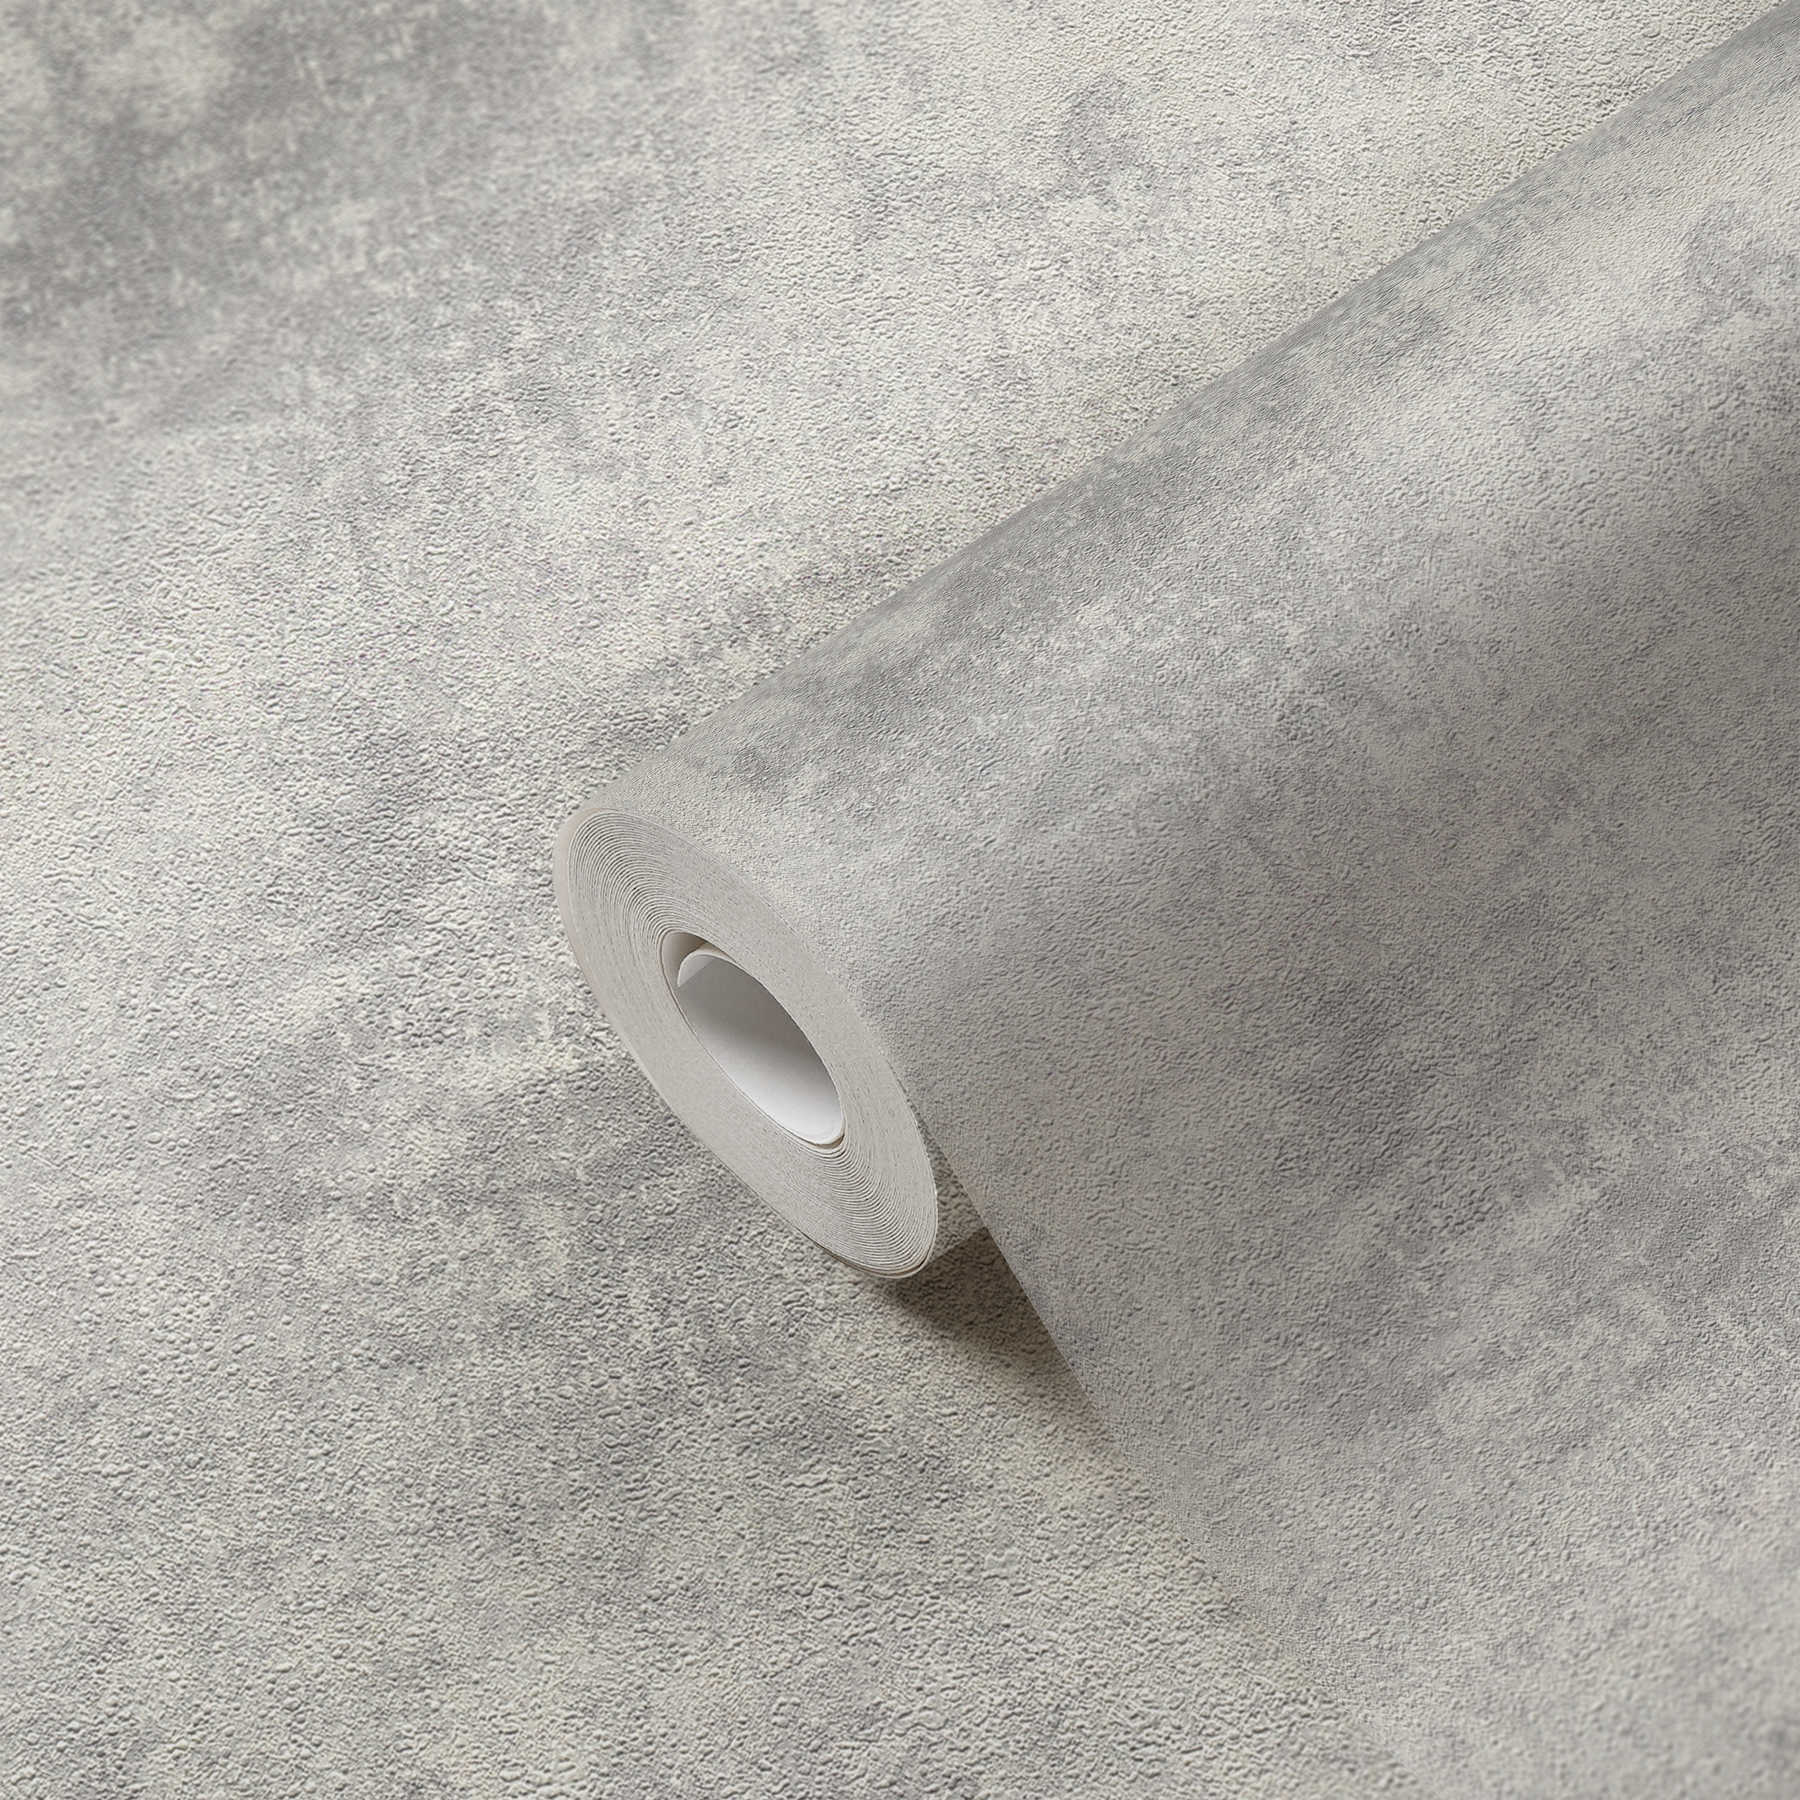             Vliestapeten mit Scheibenputz-Optik & Strukturmuster – Grau, Silber
        